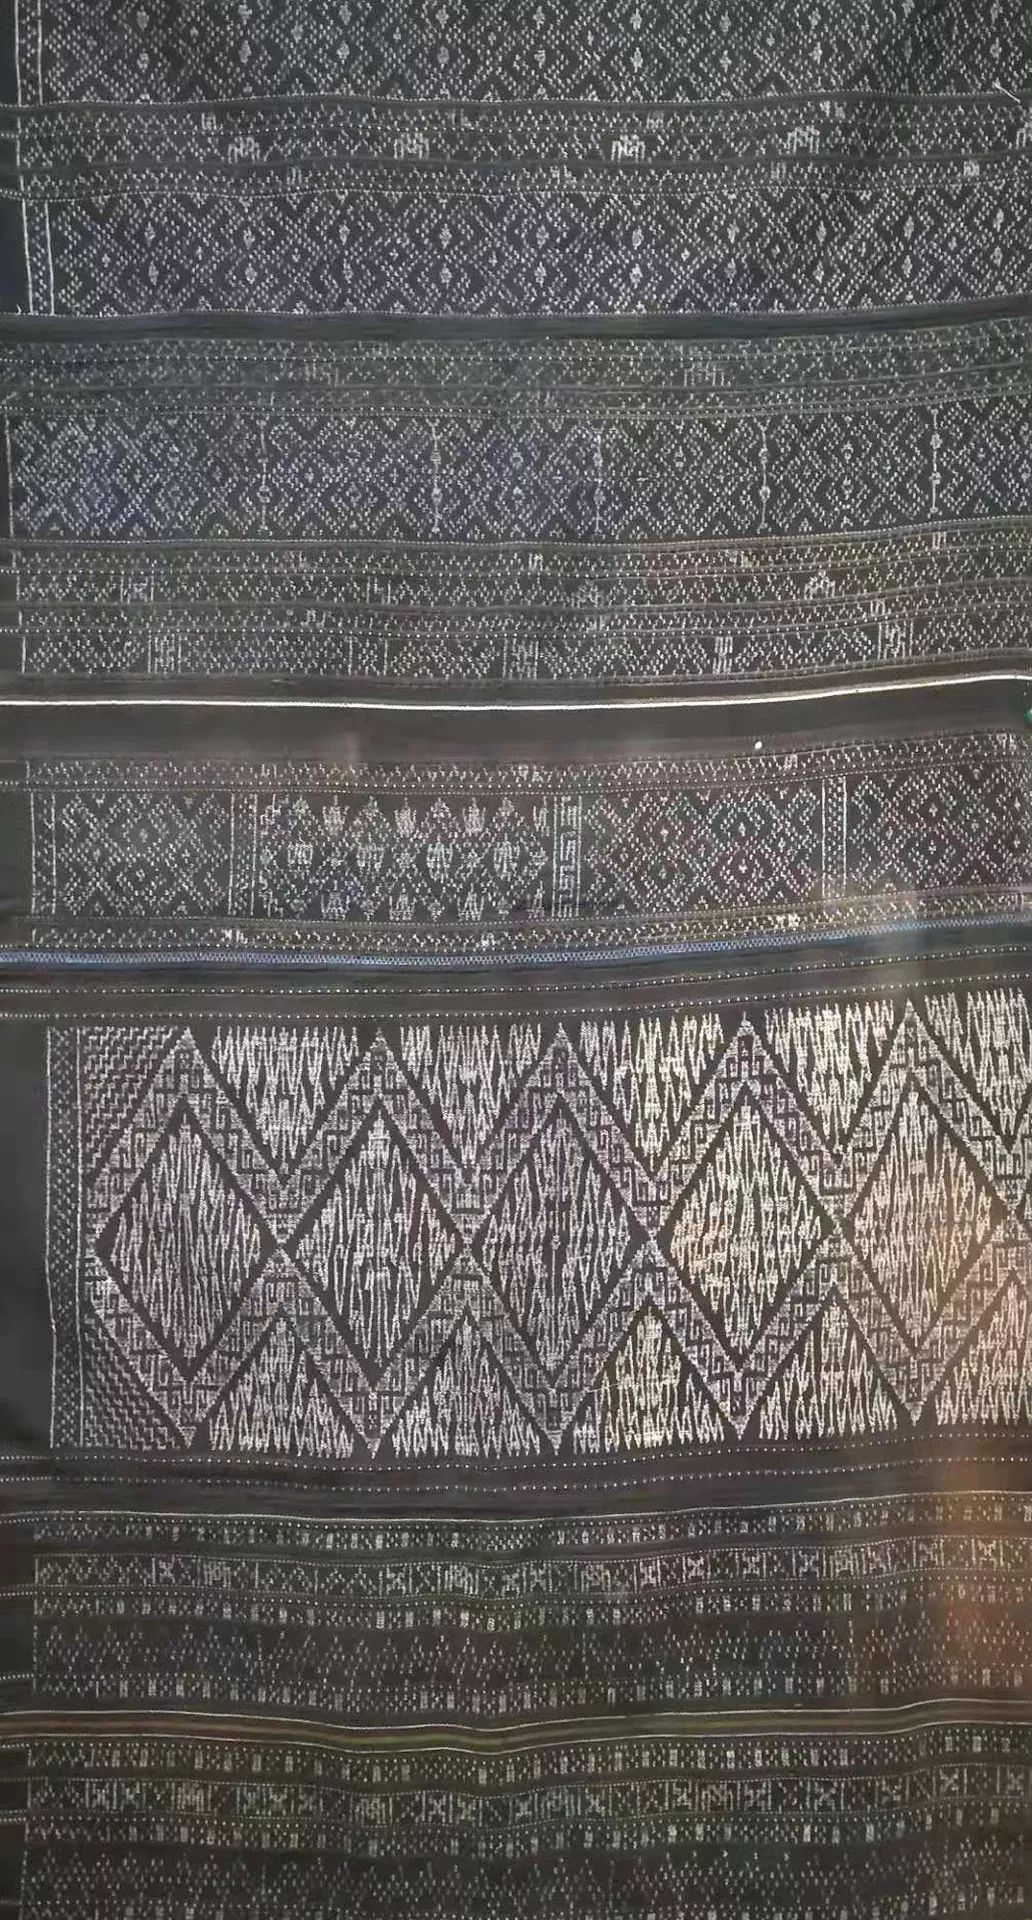 世界非遗:黎族的纺织染绣技艺